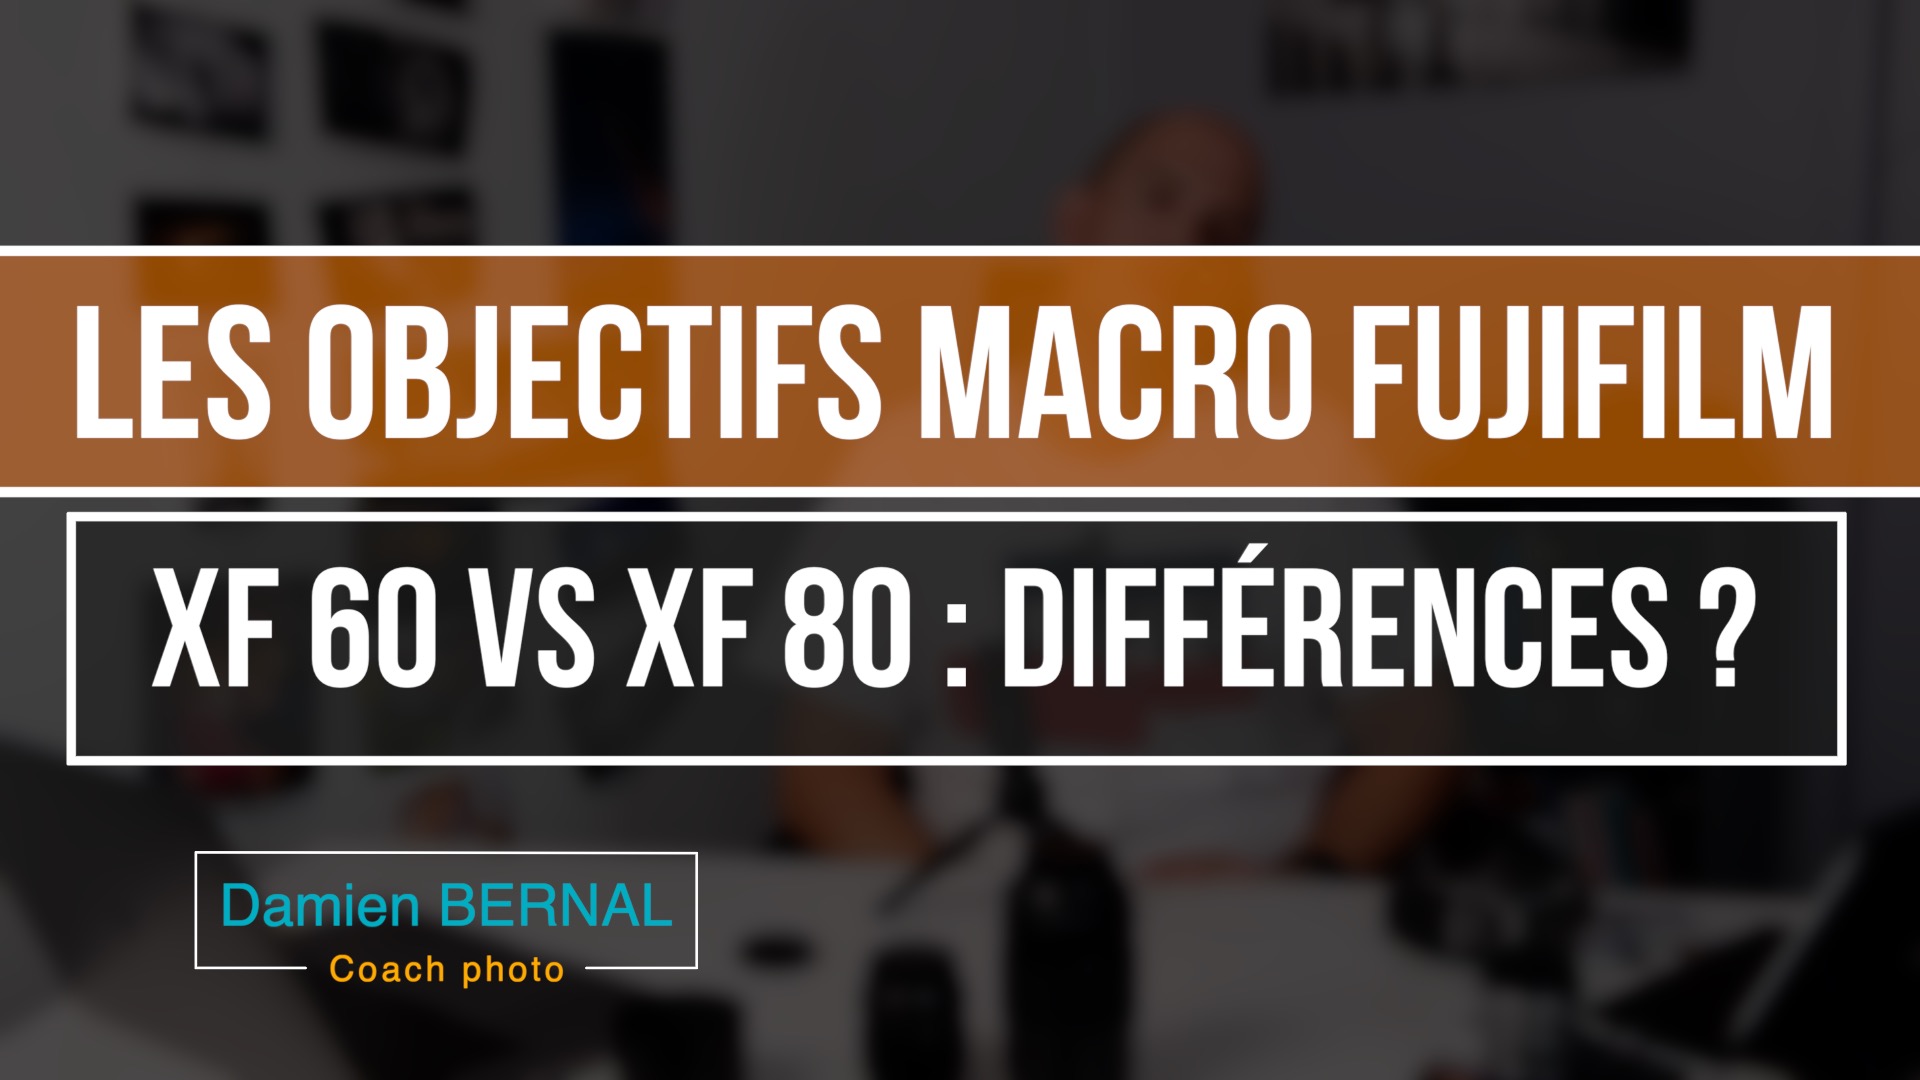 XF60 vs XF80